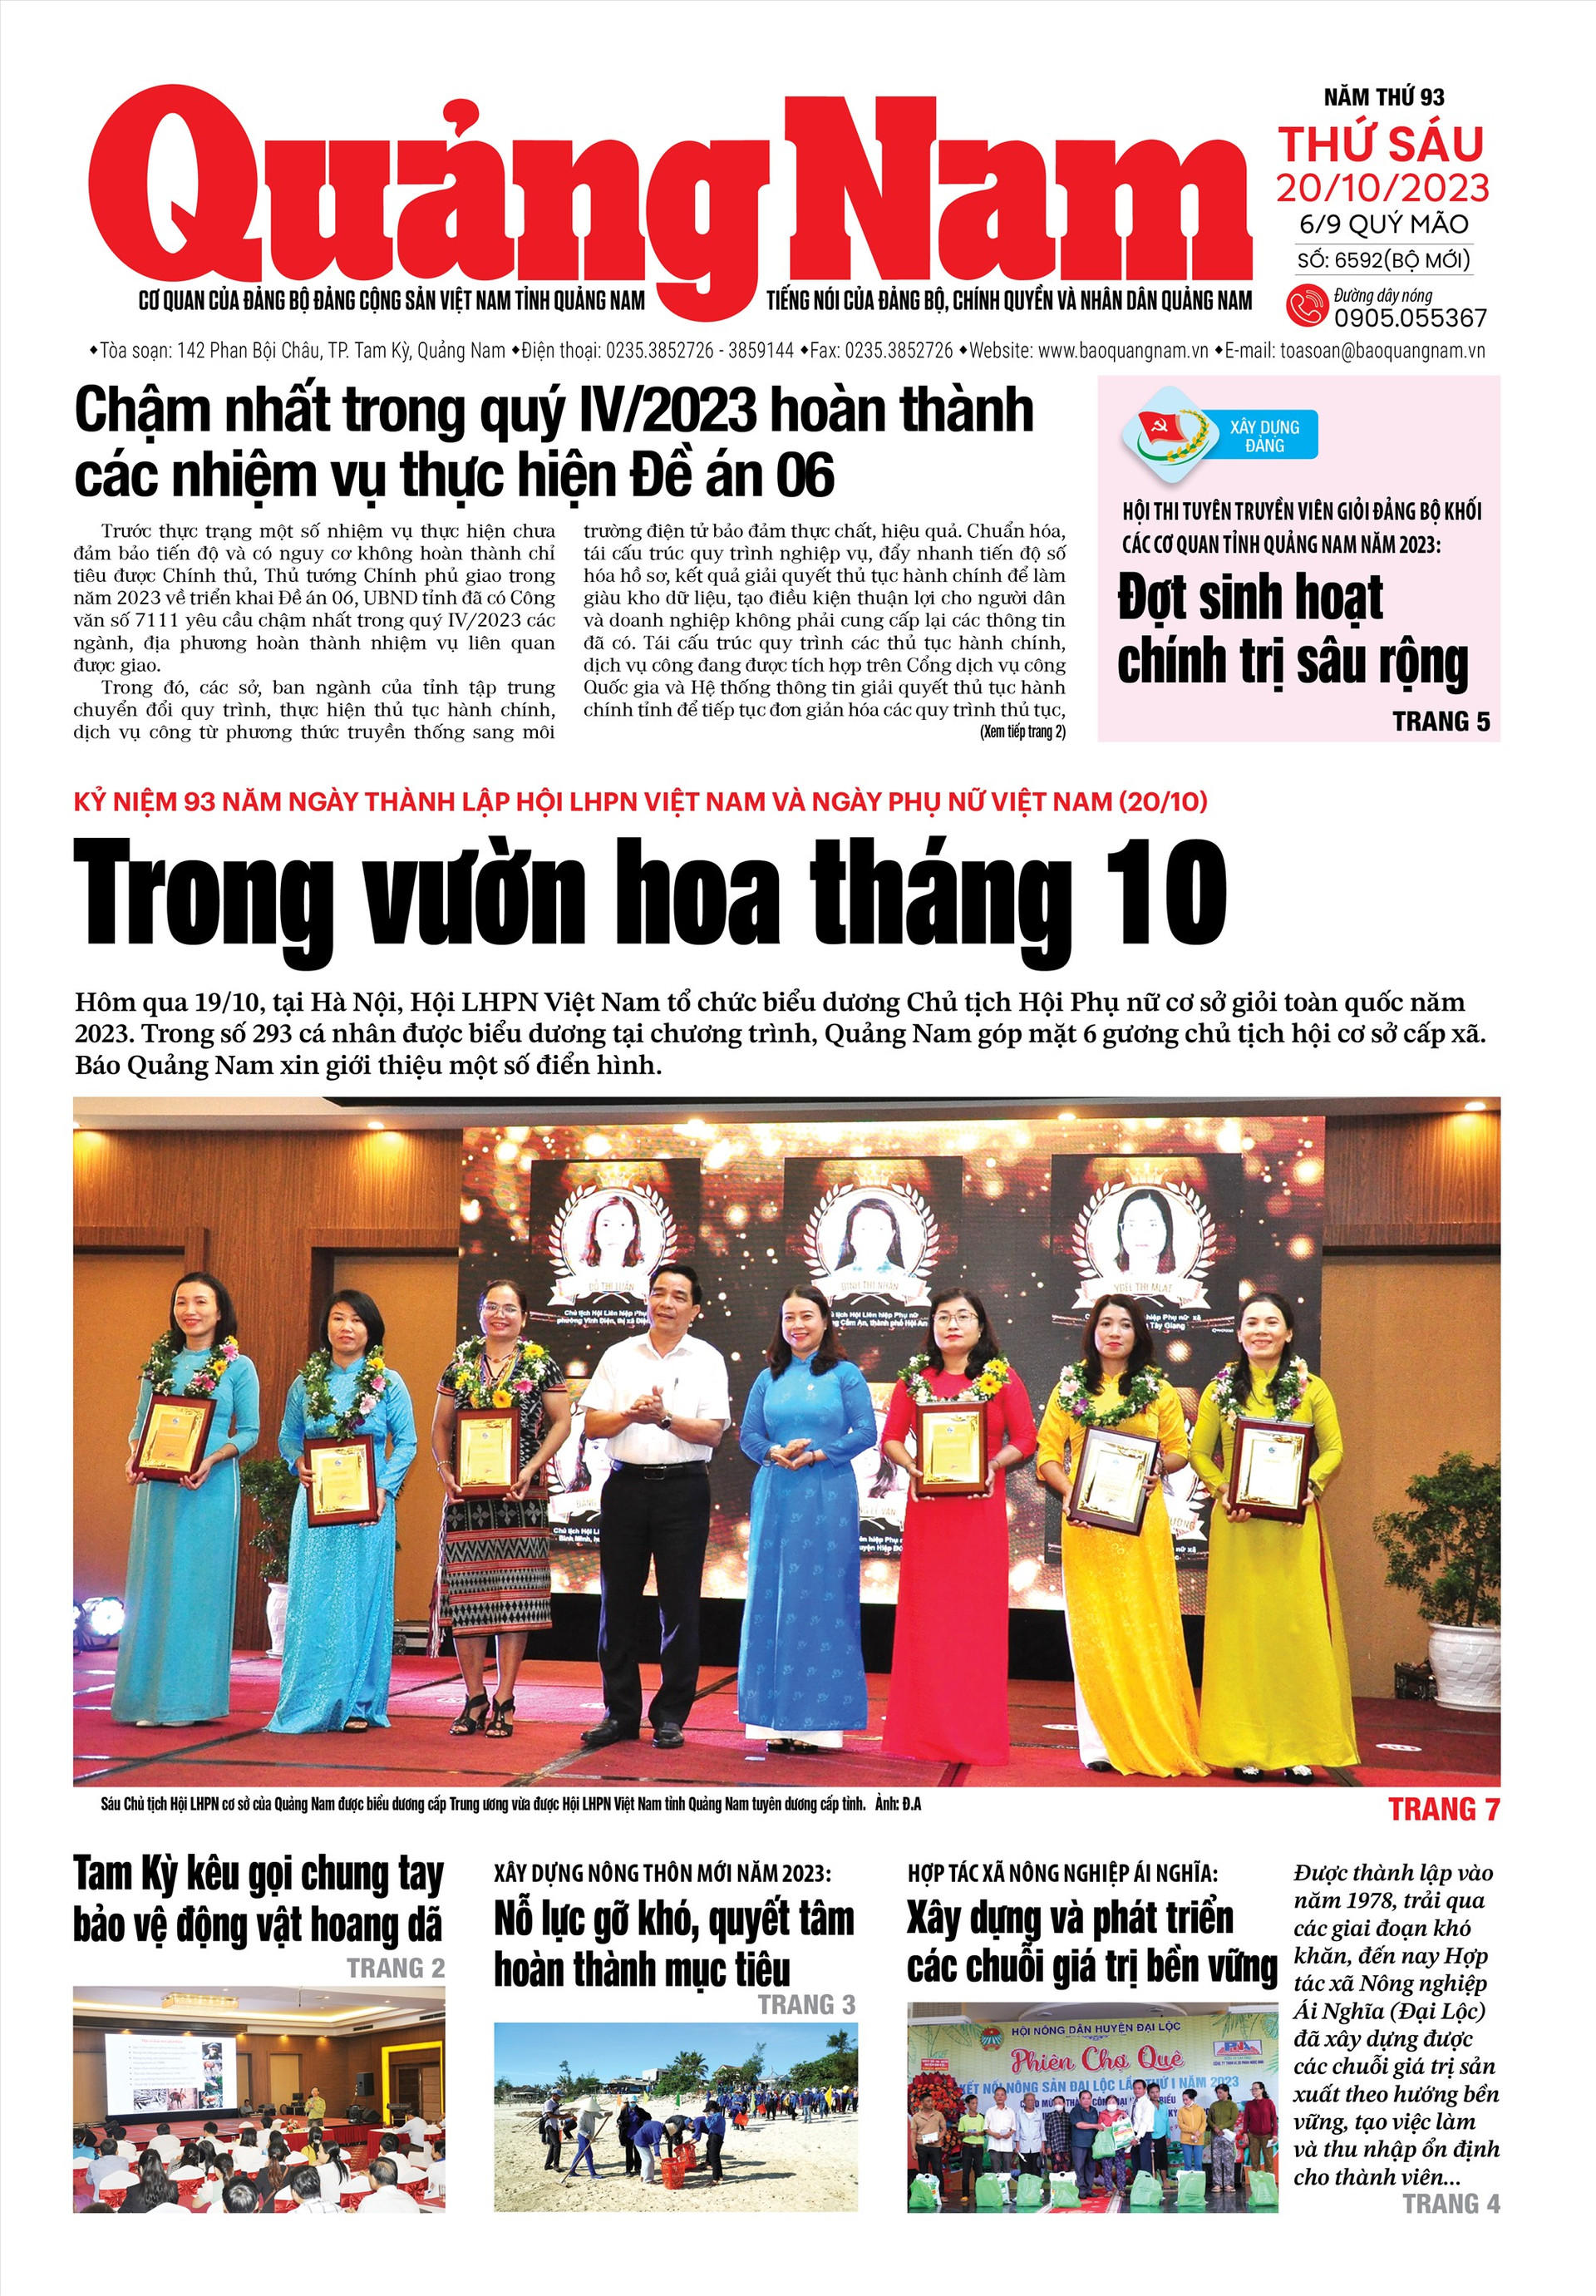 Trang Nhất báo Quảng Nam số thứ Sáu 20/10.